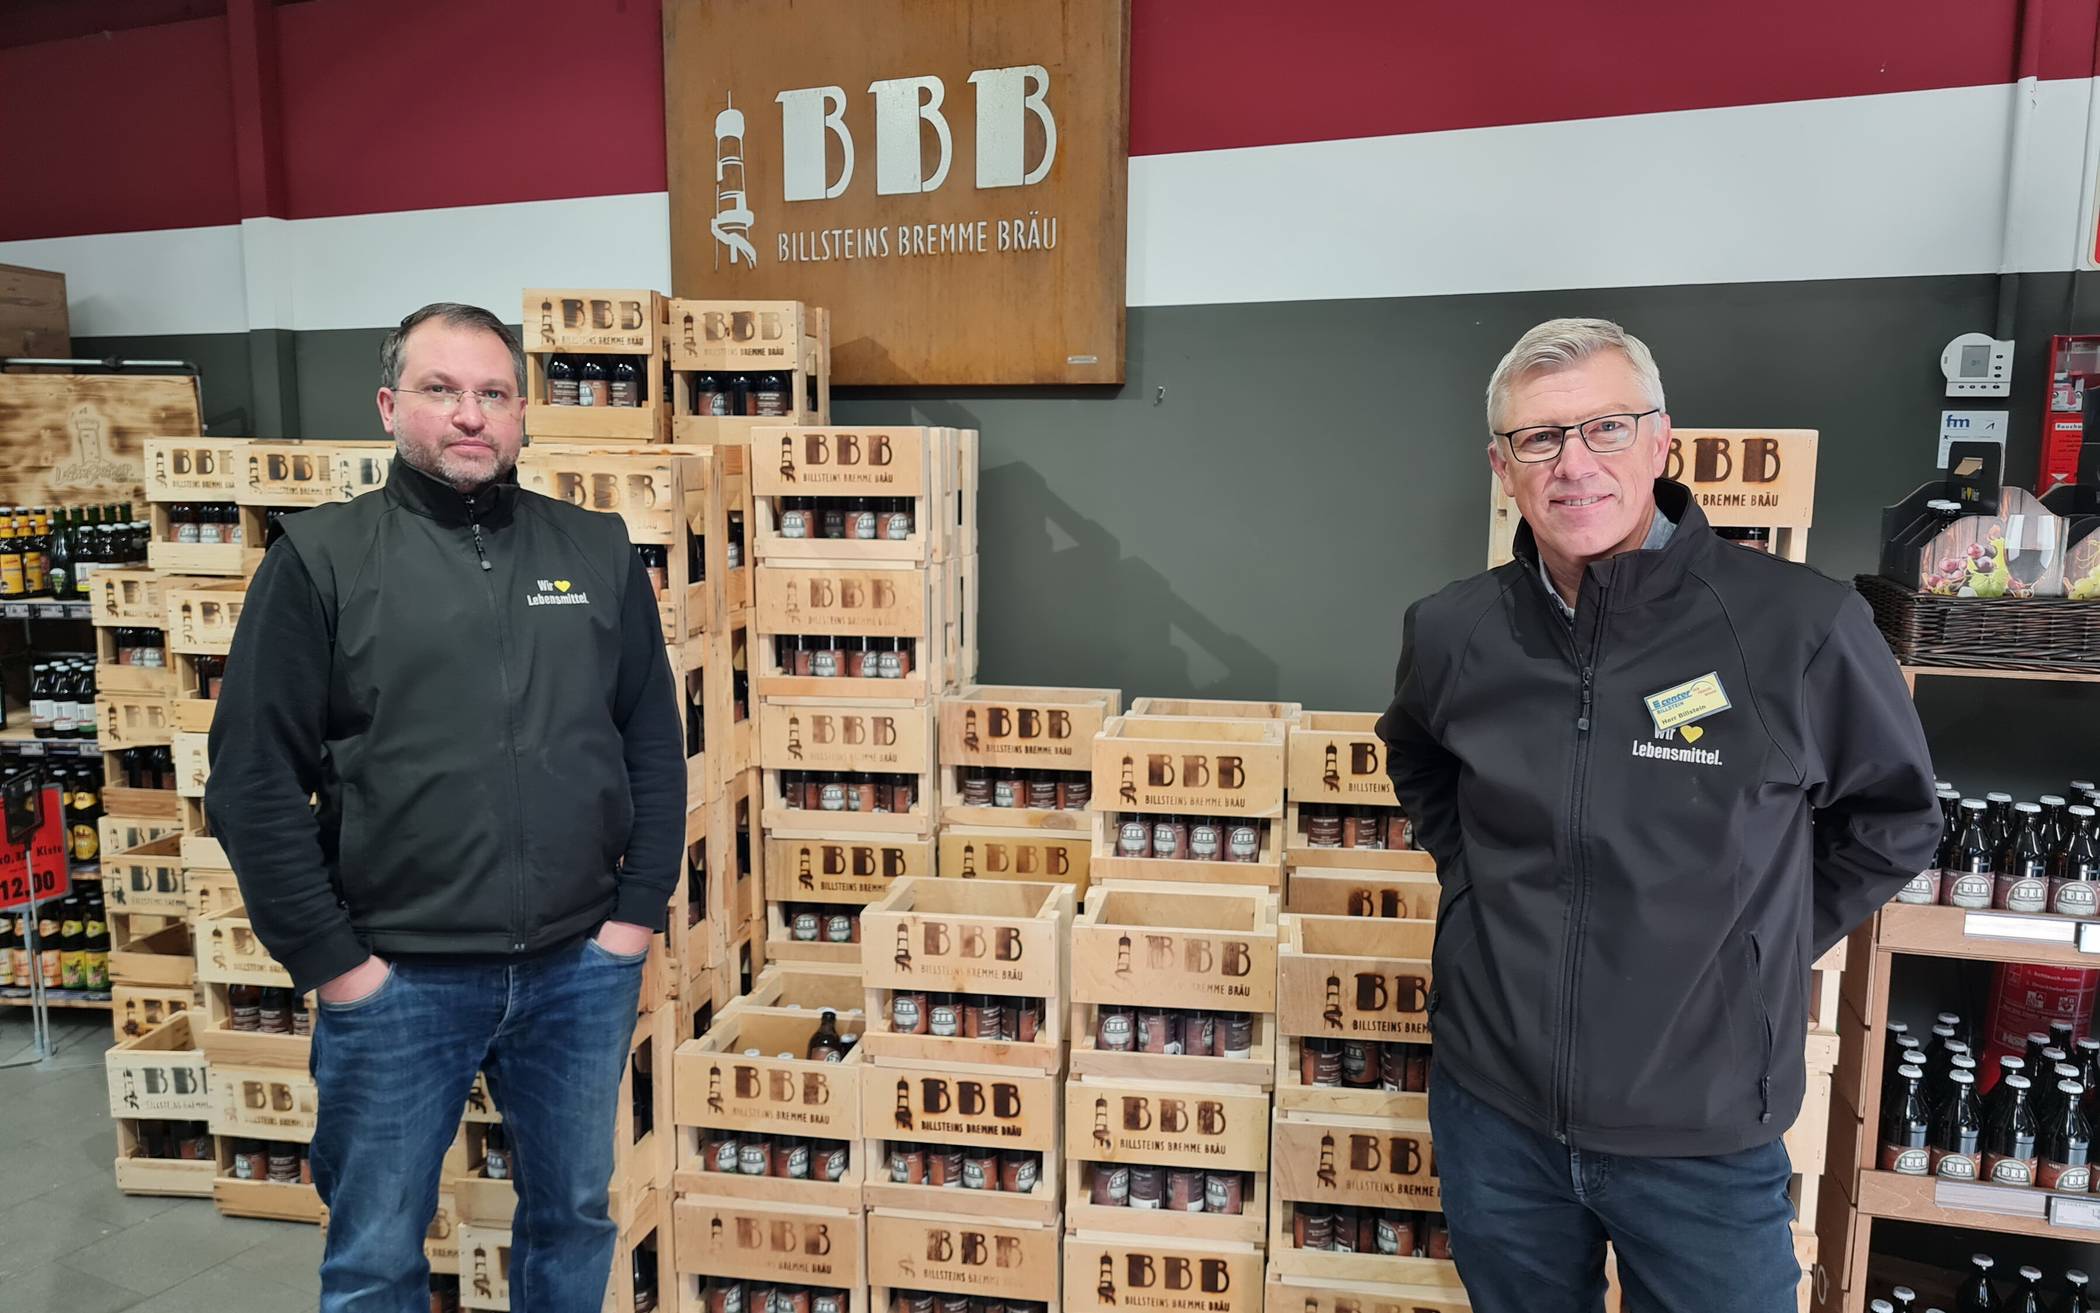  Getränkemarktleiter Oliver Kuhn (li.) und Edeka-Geschäftsführer Markus Billstein zeigen ihr hauseigenes Bier-Billsteins-Bremme-Bräu (BBB). 